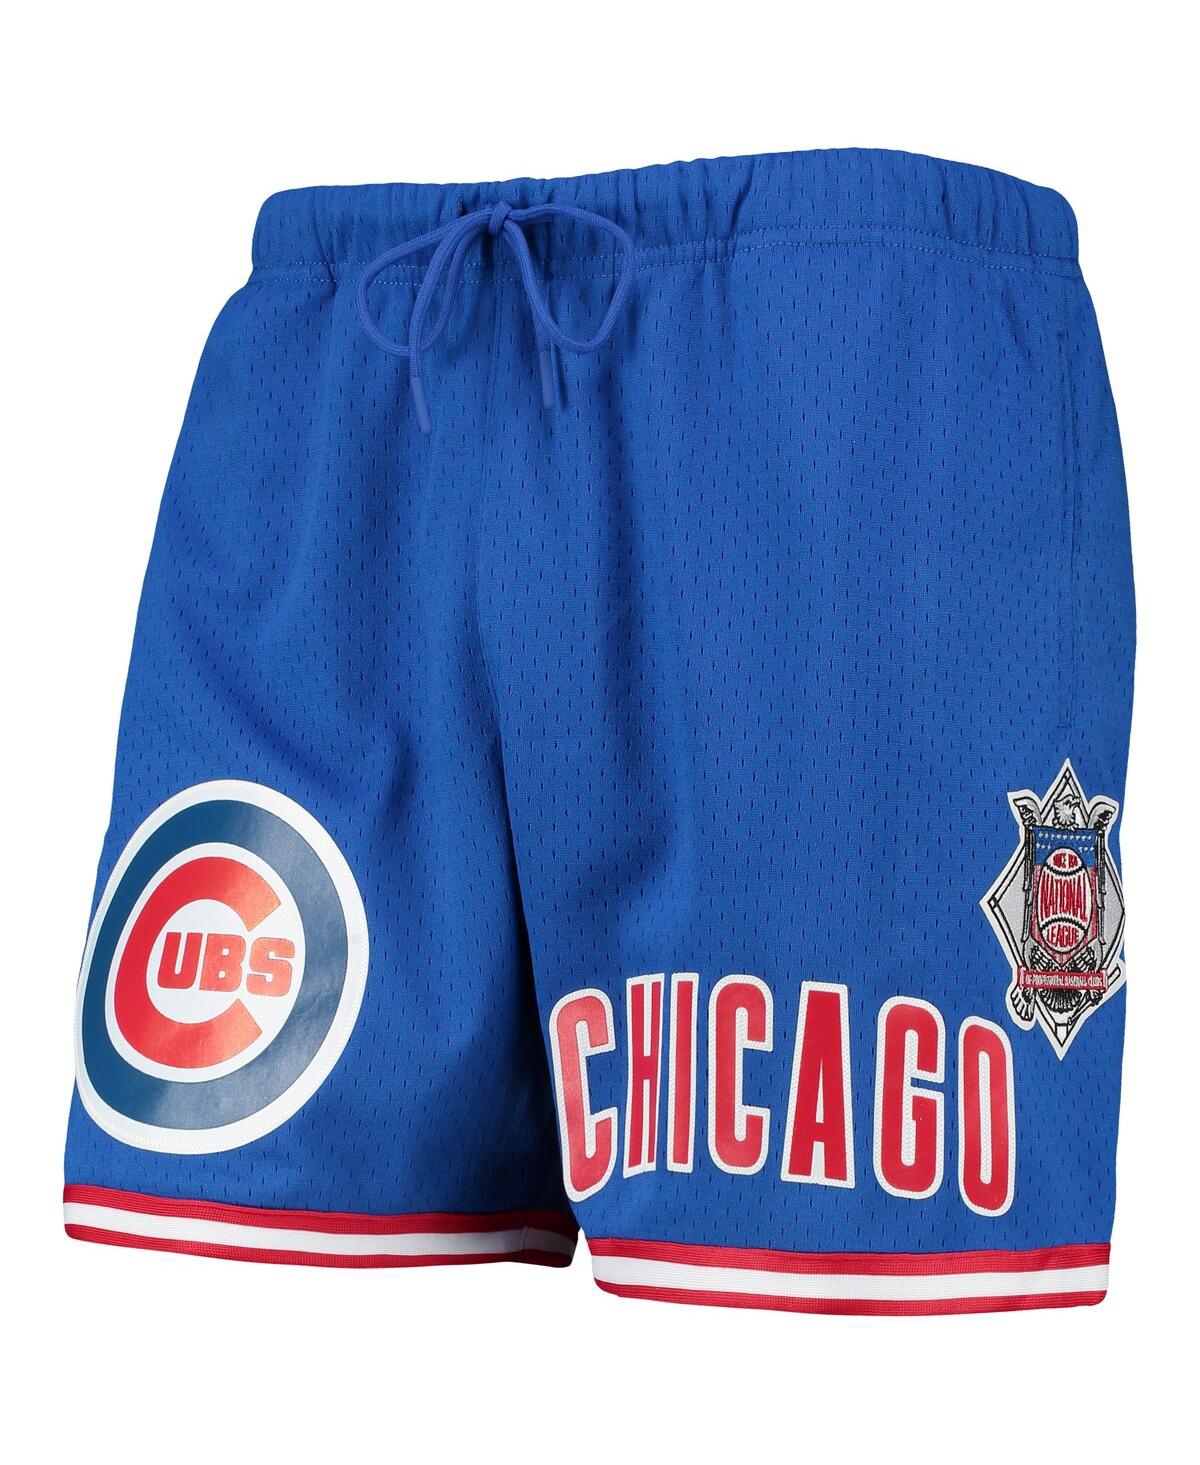 Shop Pro Standard Men's  Royal Chicago Cubs Since 1876 Mesh Shorts